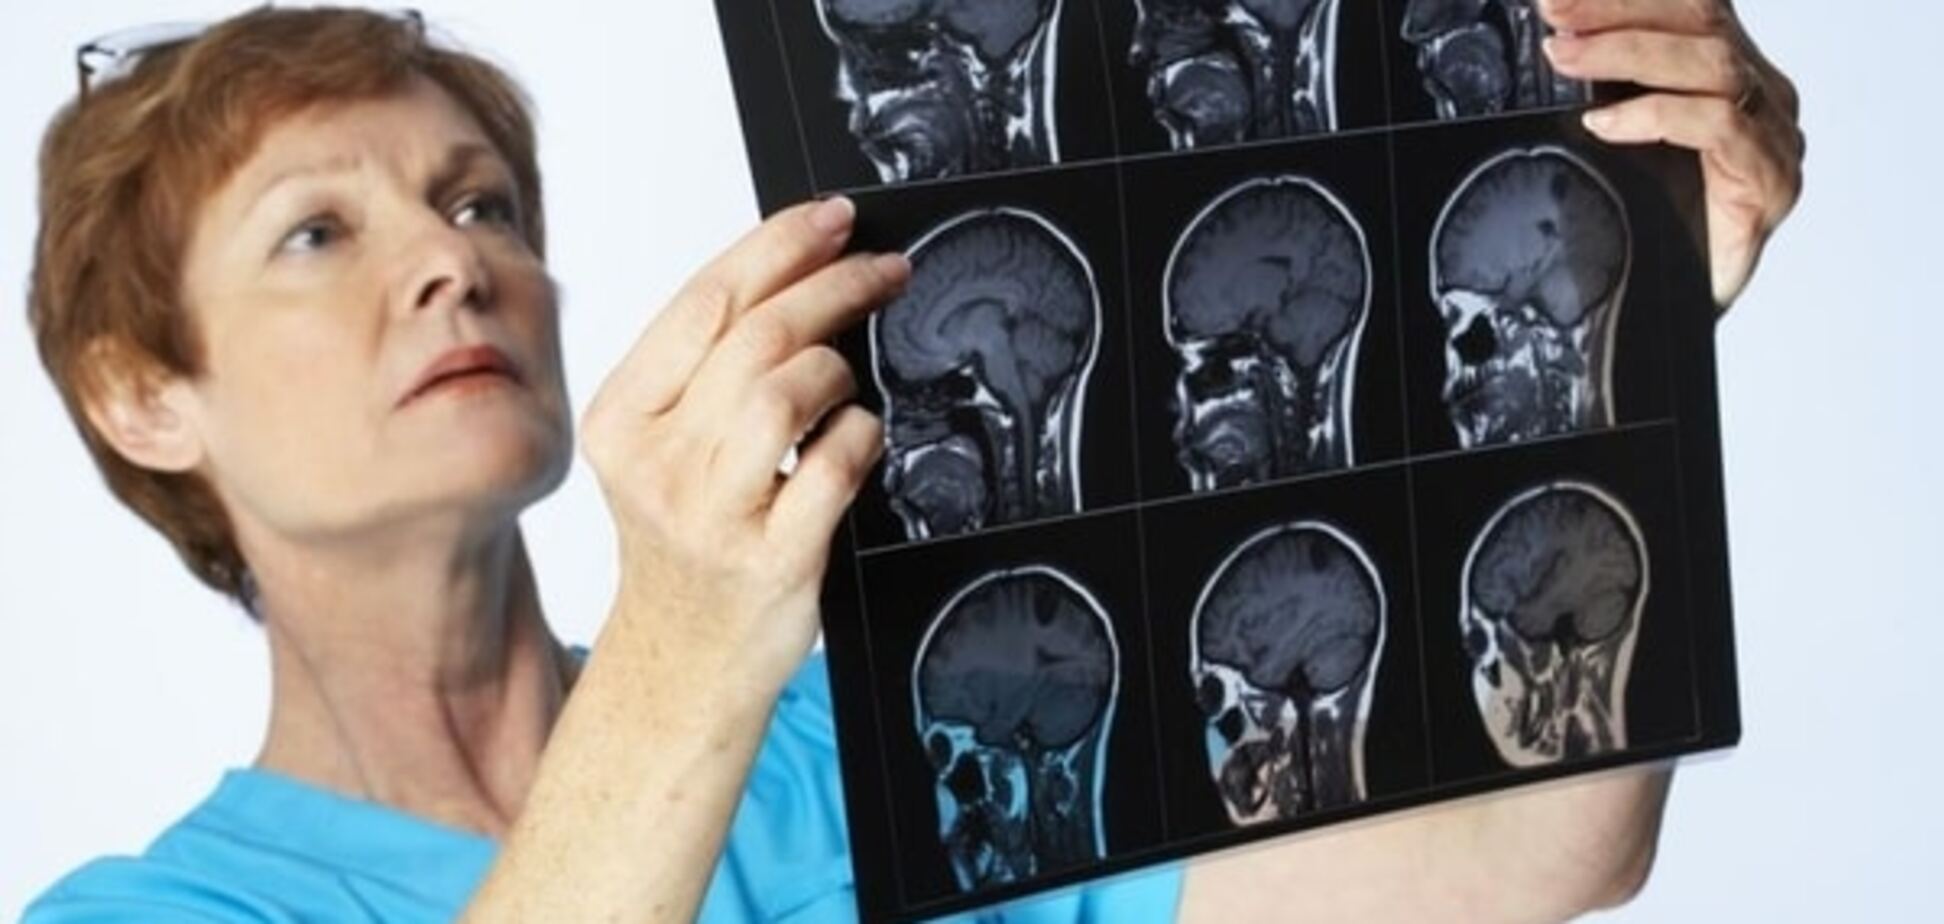 Ученые показали, как происходит заражение мозга менингитом: видеофакт